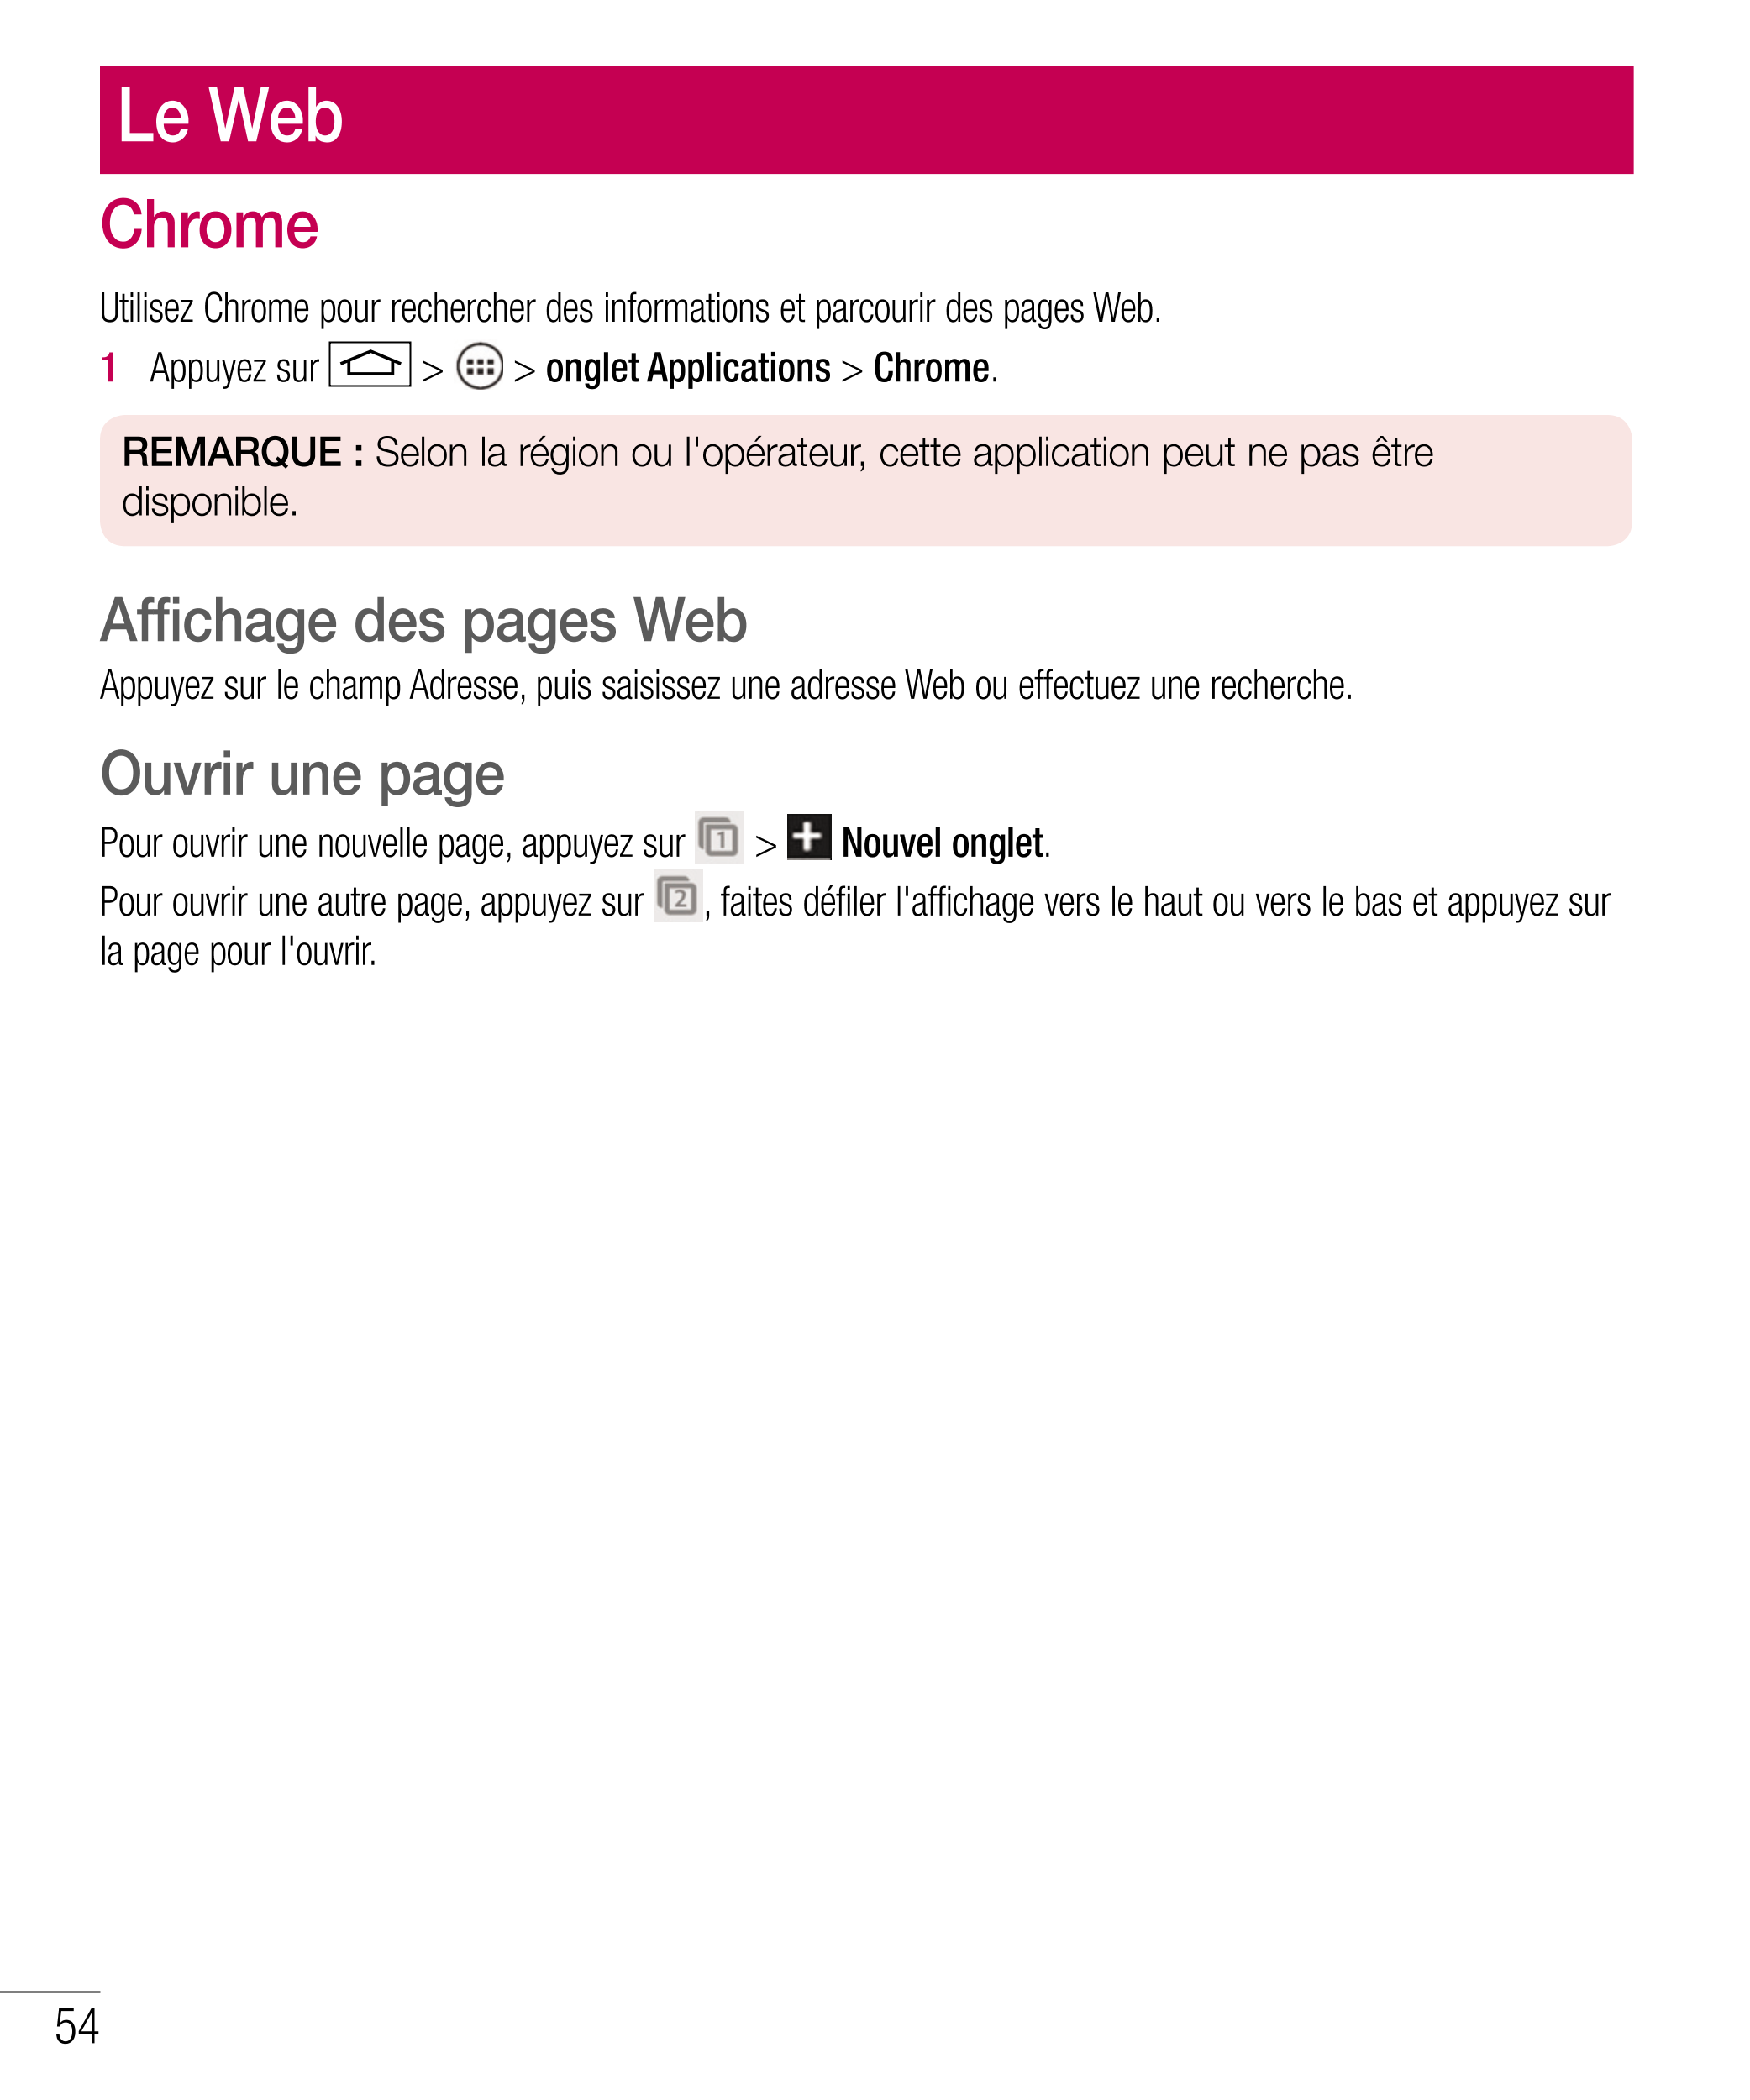 Le Web
Chrome
Utilisez Chrome pour rechercher des informations et parcourir des pages Web.
1   Appuyez sur   >   >  onglet Appli